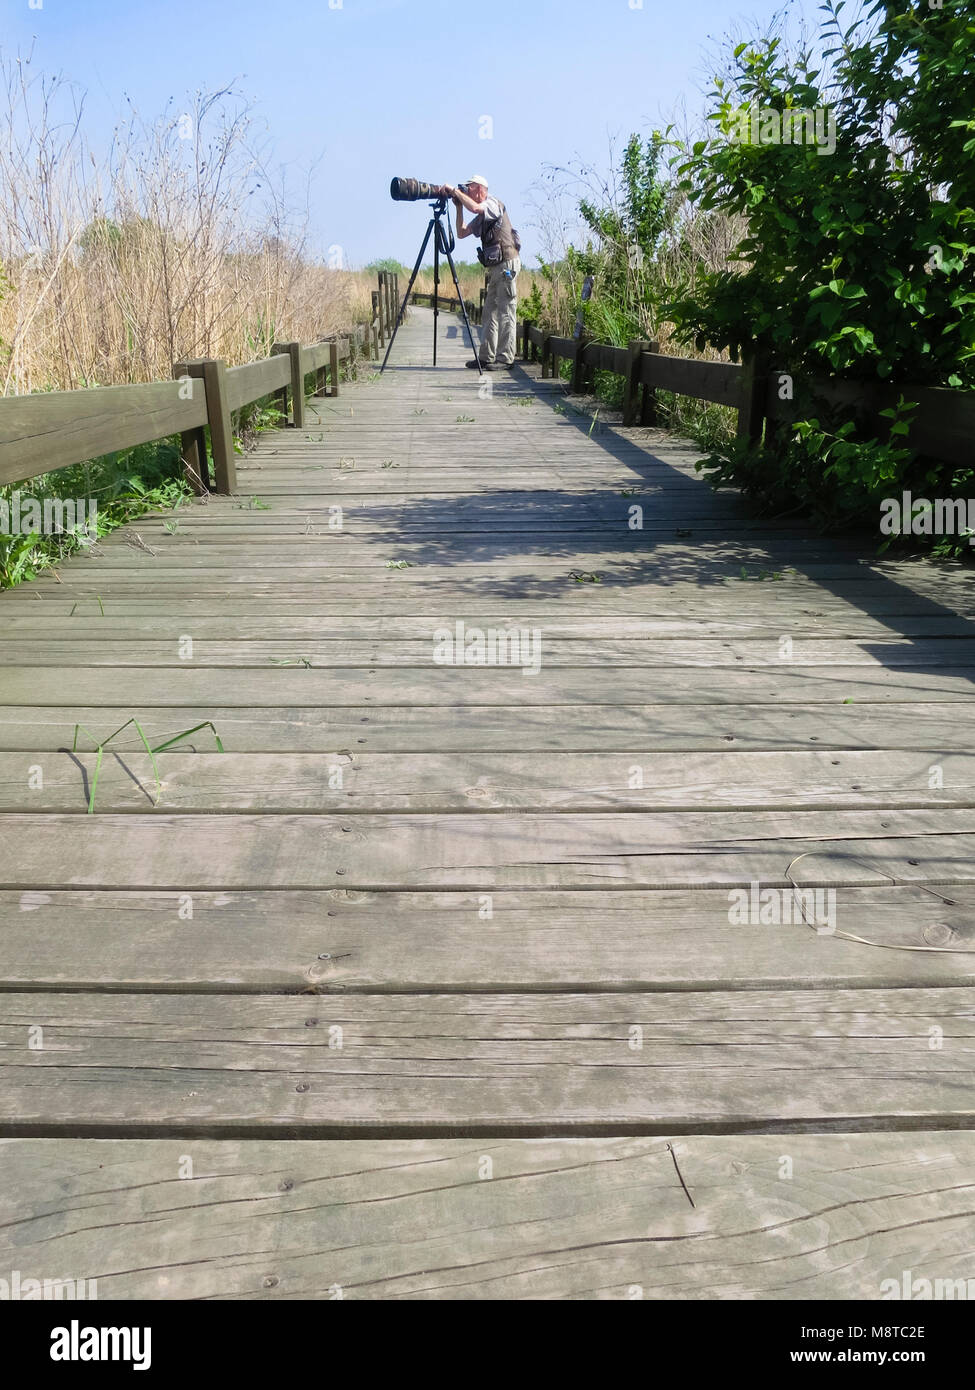 Mannelijke fotograaf met telelens staand op houten wandelpad; Male photographer with zoom lens standing on boardwalk Stock Photo